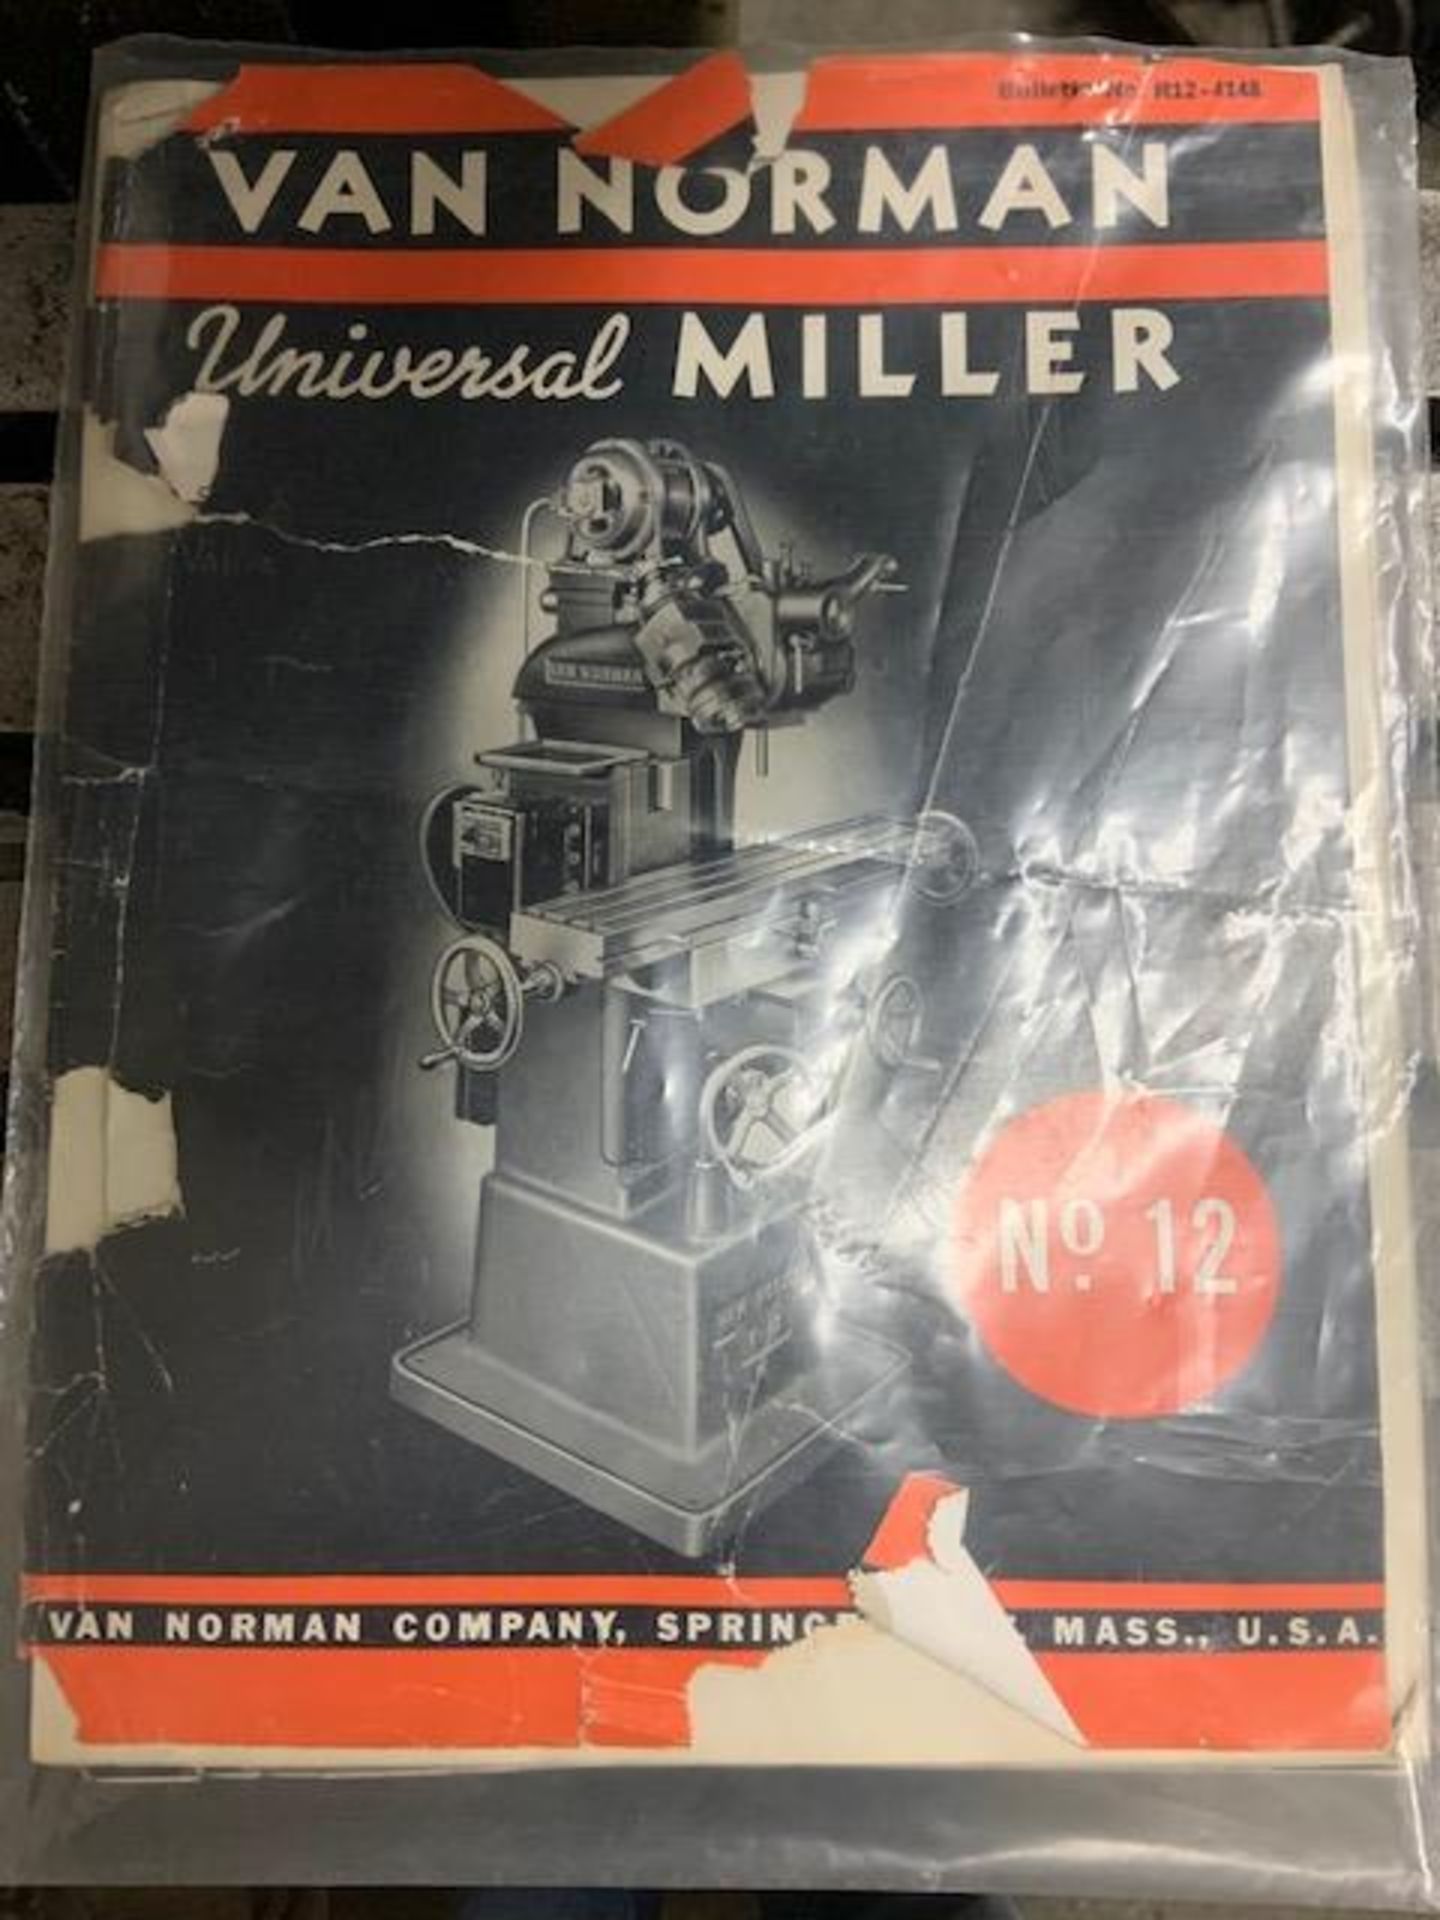 Van Norman Universal Miller, No. 12 - Image 2 of 3